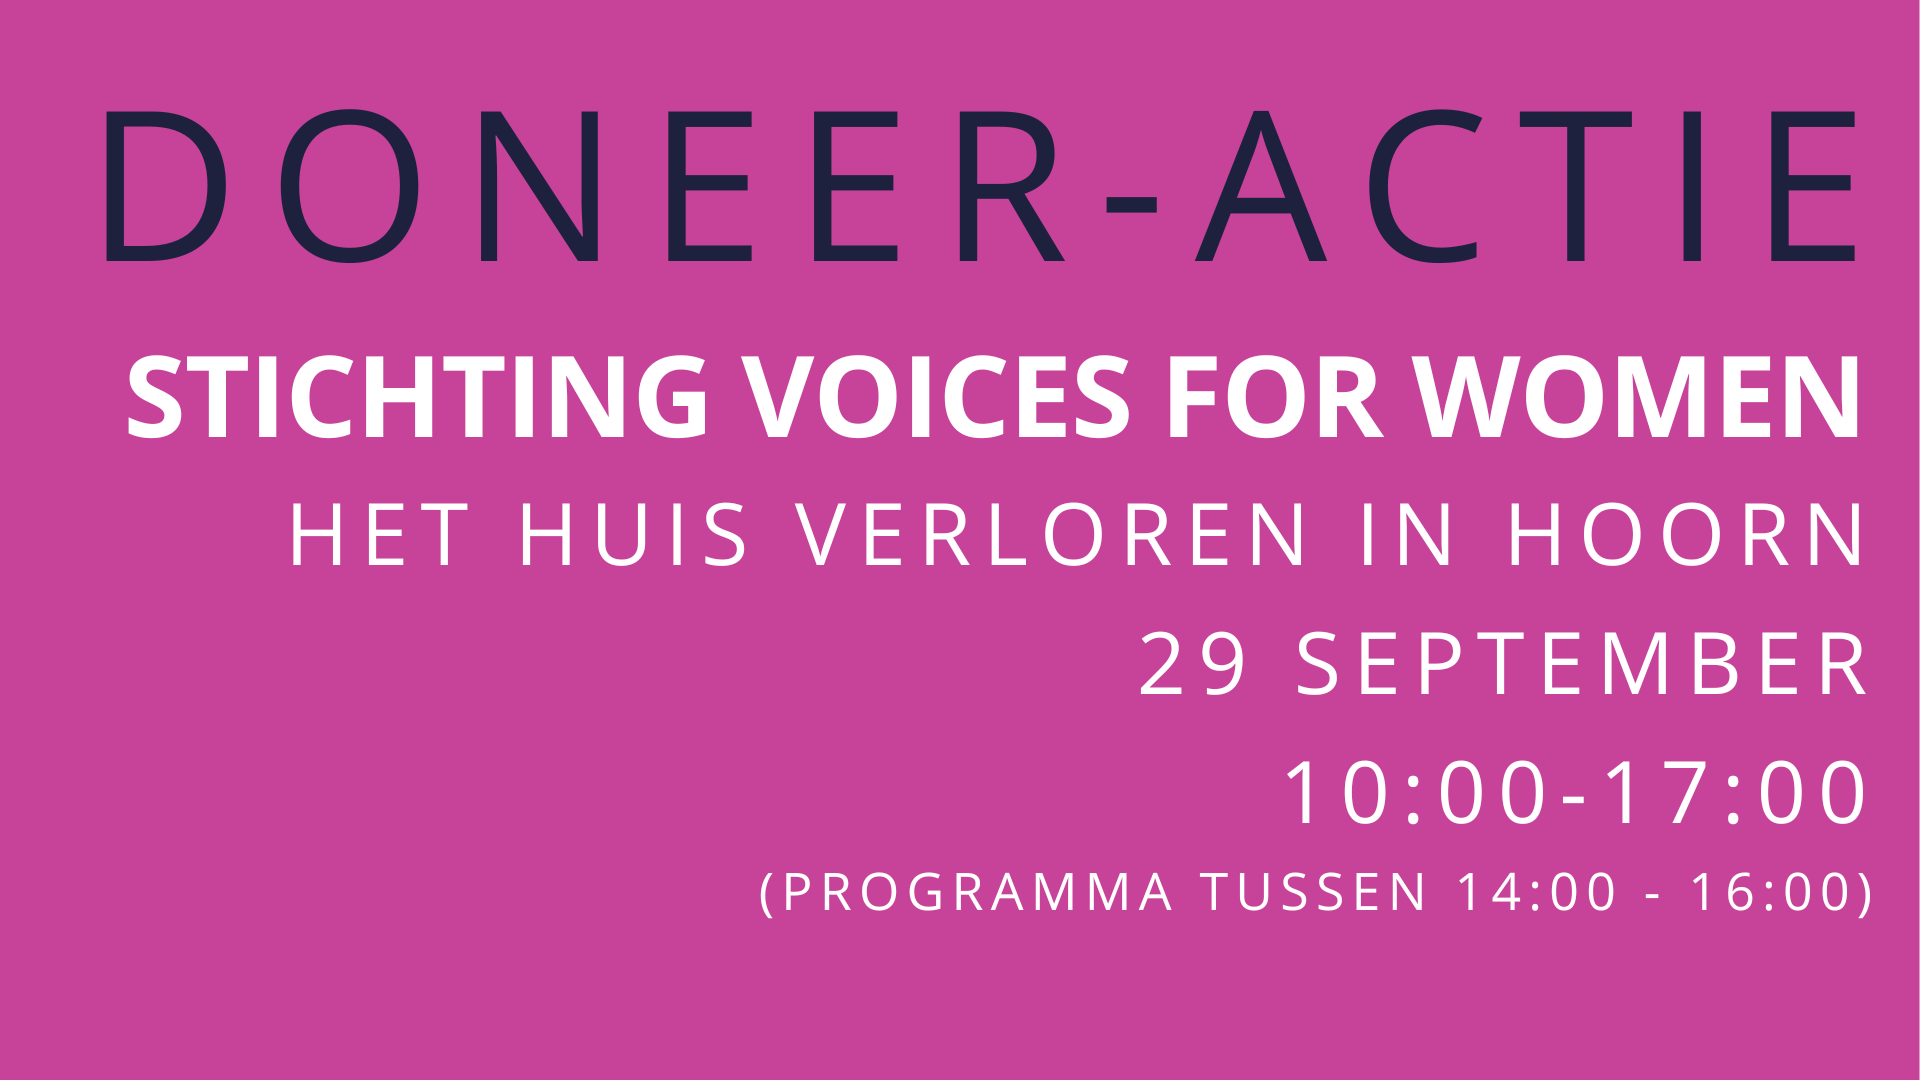 Doneer-actie - live talkshow in hartje Hoorn (29 september)